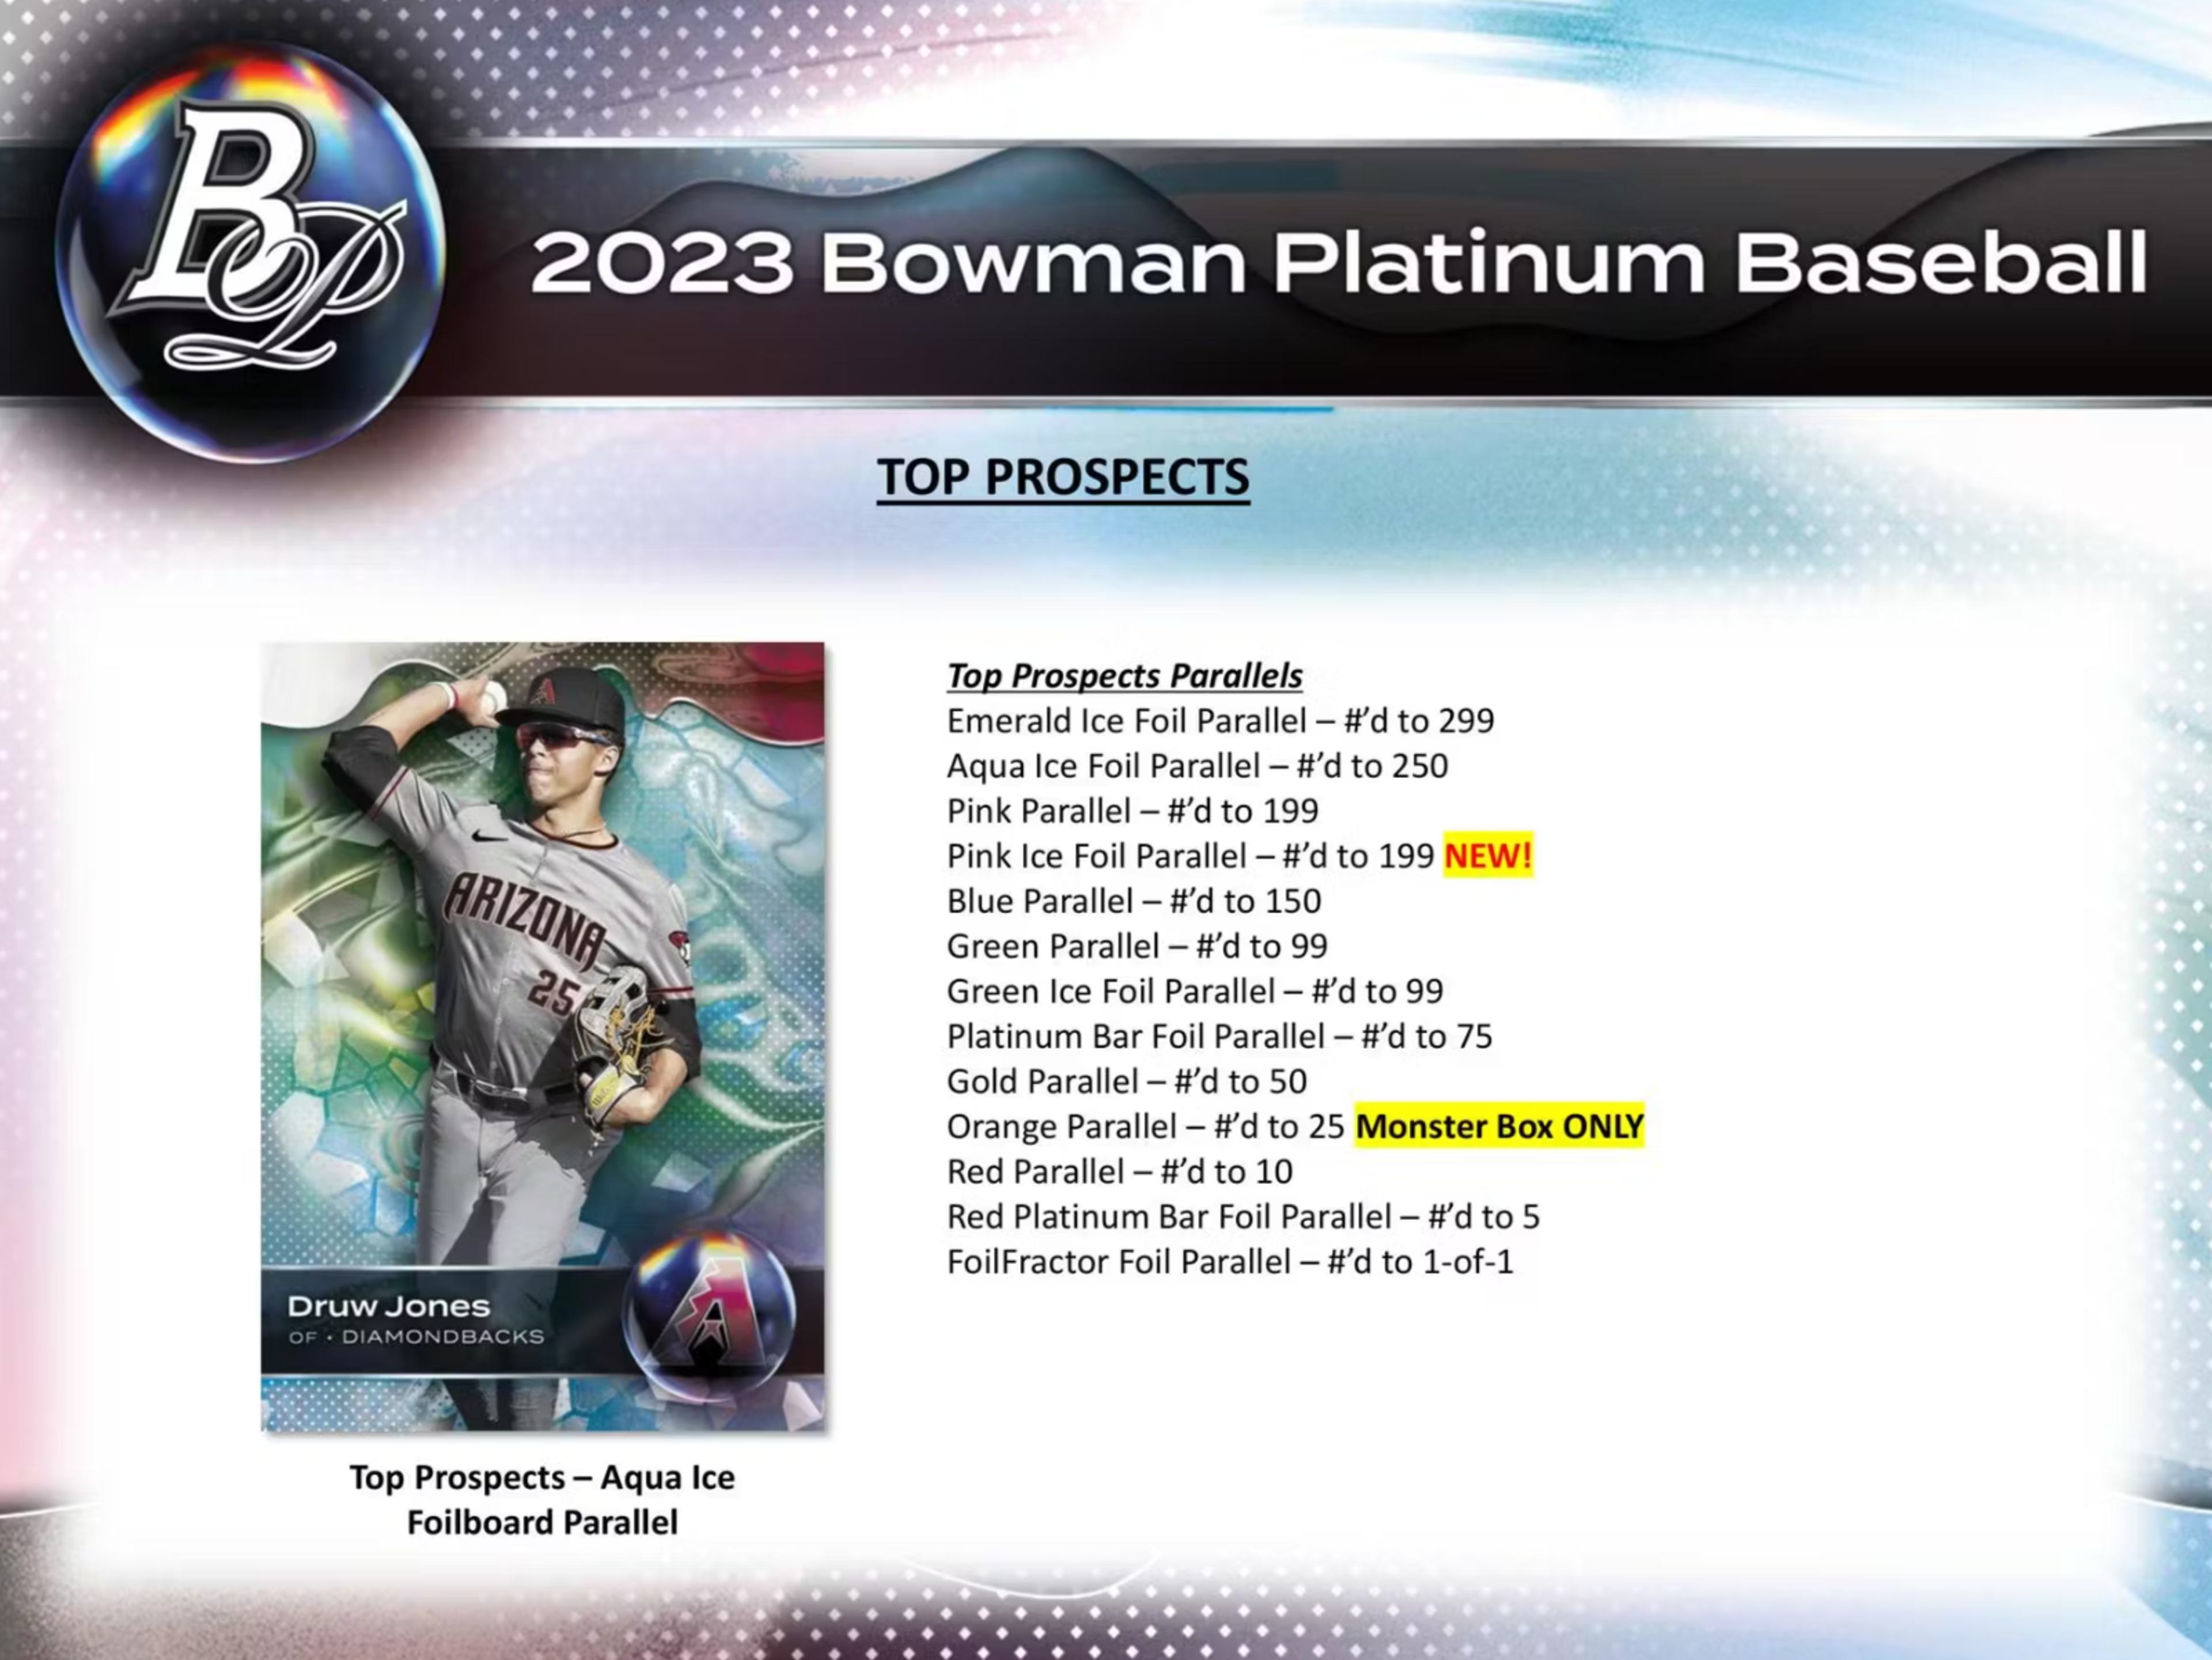 Alternate View 3 of 2023 Bowman Platinum Baseball Monster Box